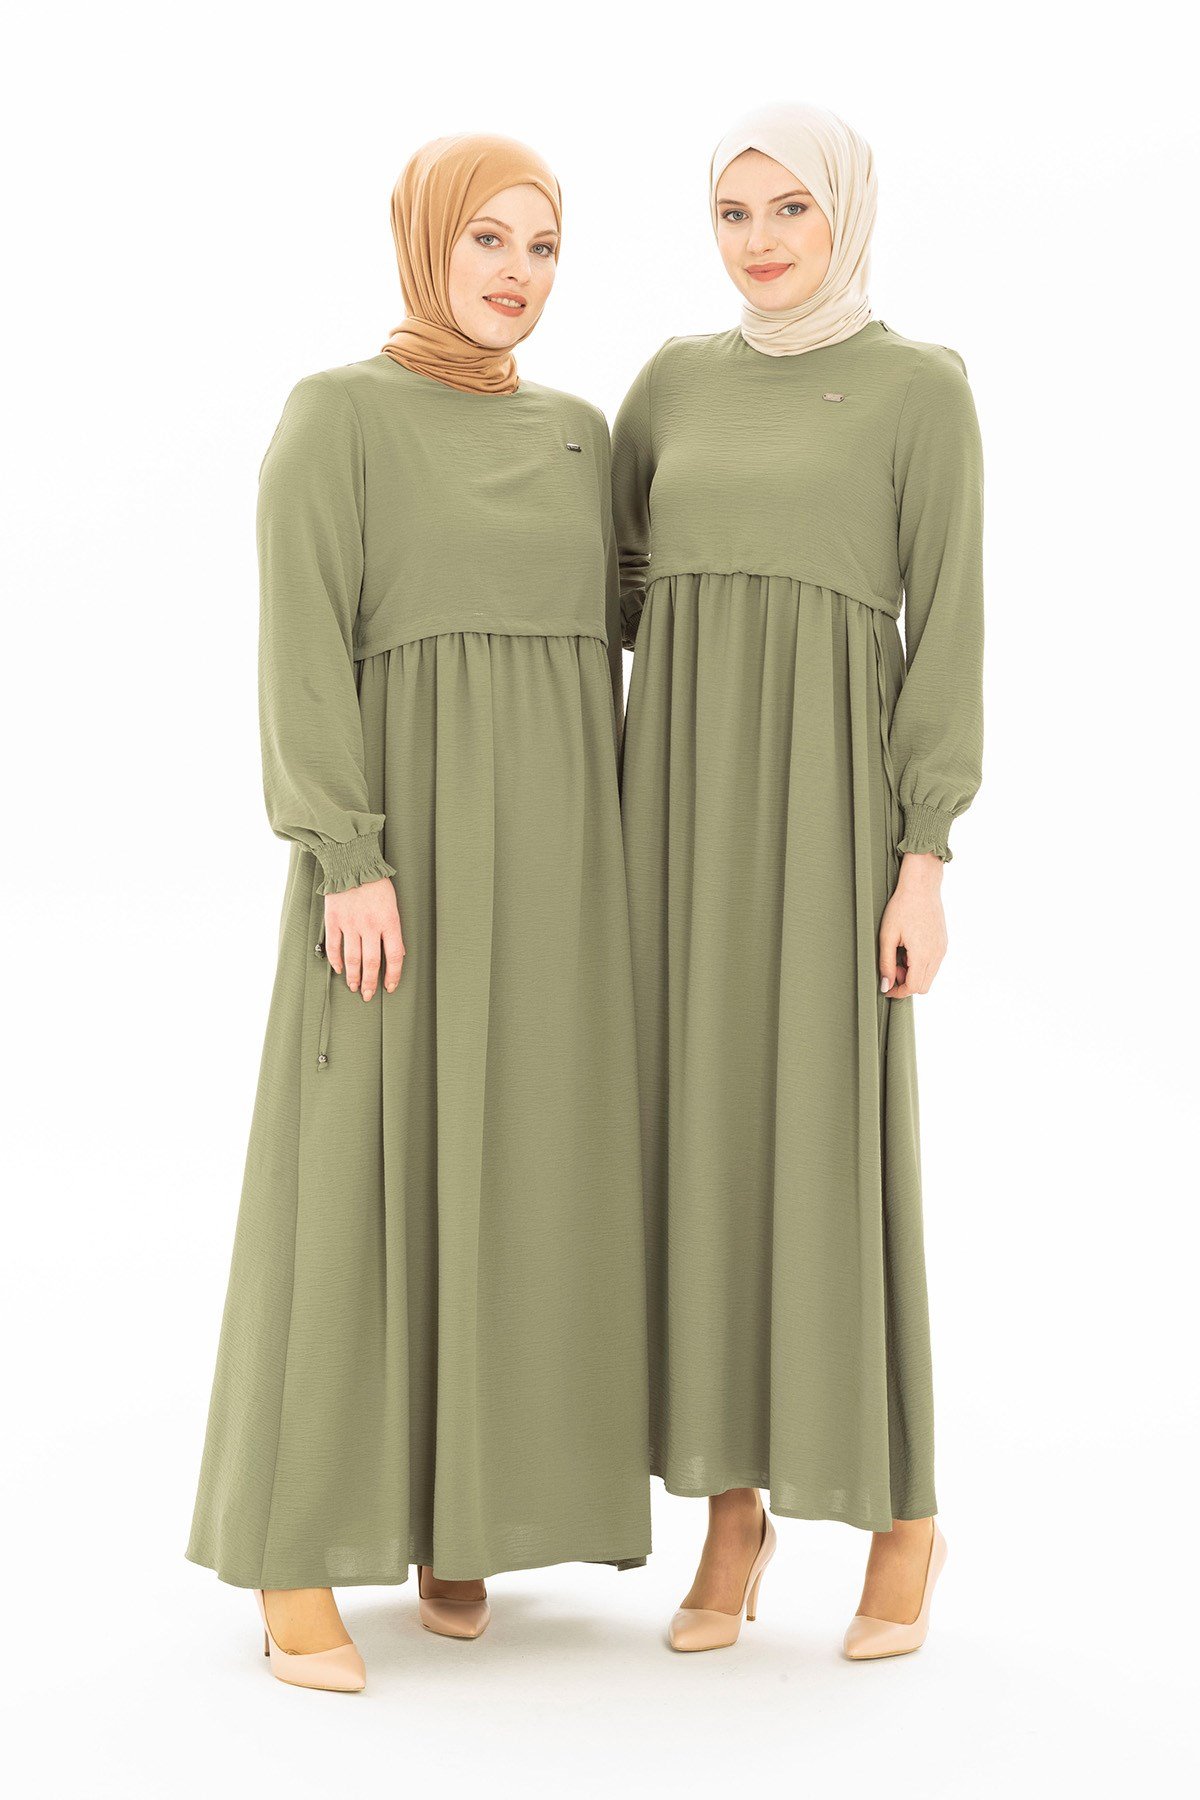 Bolero Detaylı Mint Yeşil Tesettür Elbise 5227 - Beyza